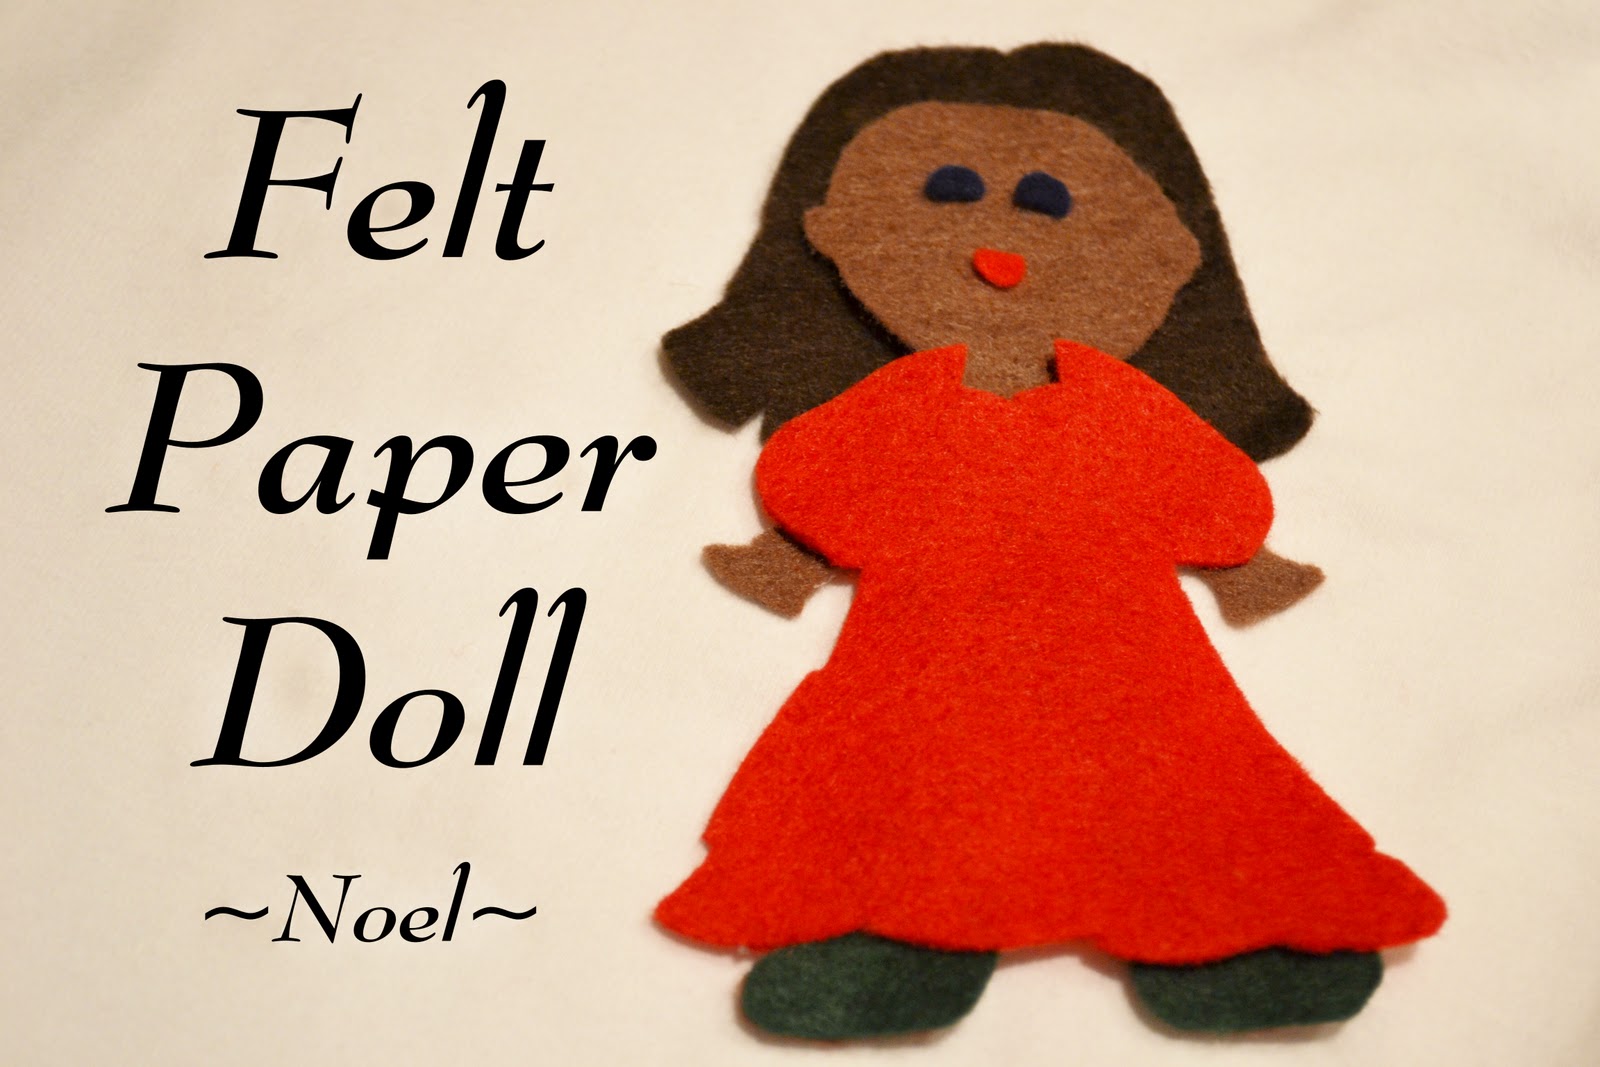 Easy DIY Doll Eyes Tutorial with Felt circles